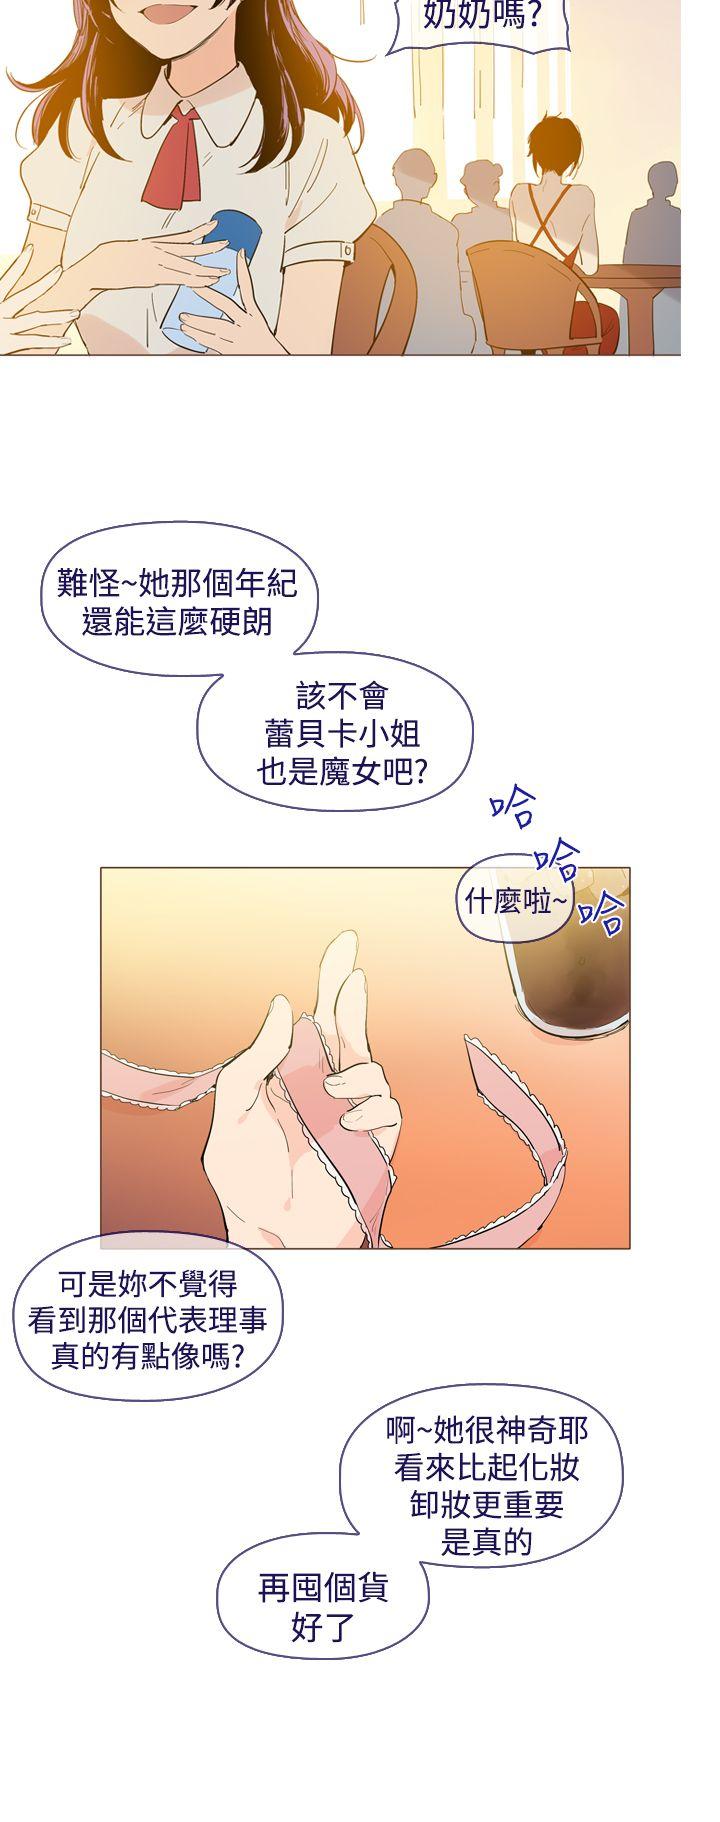 魔女  最终话 漫画图片4.jpg